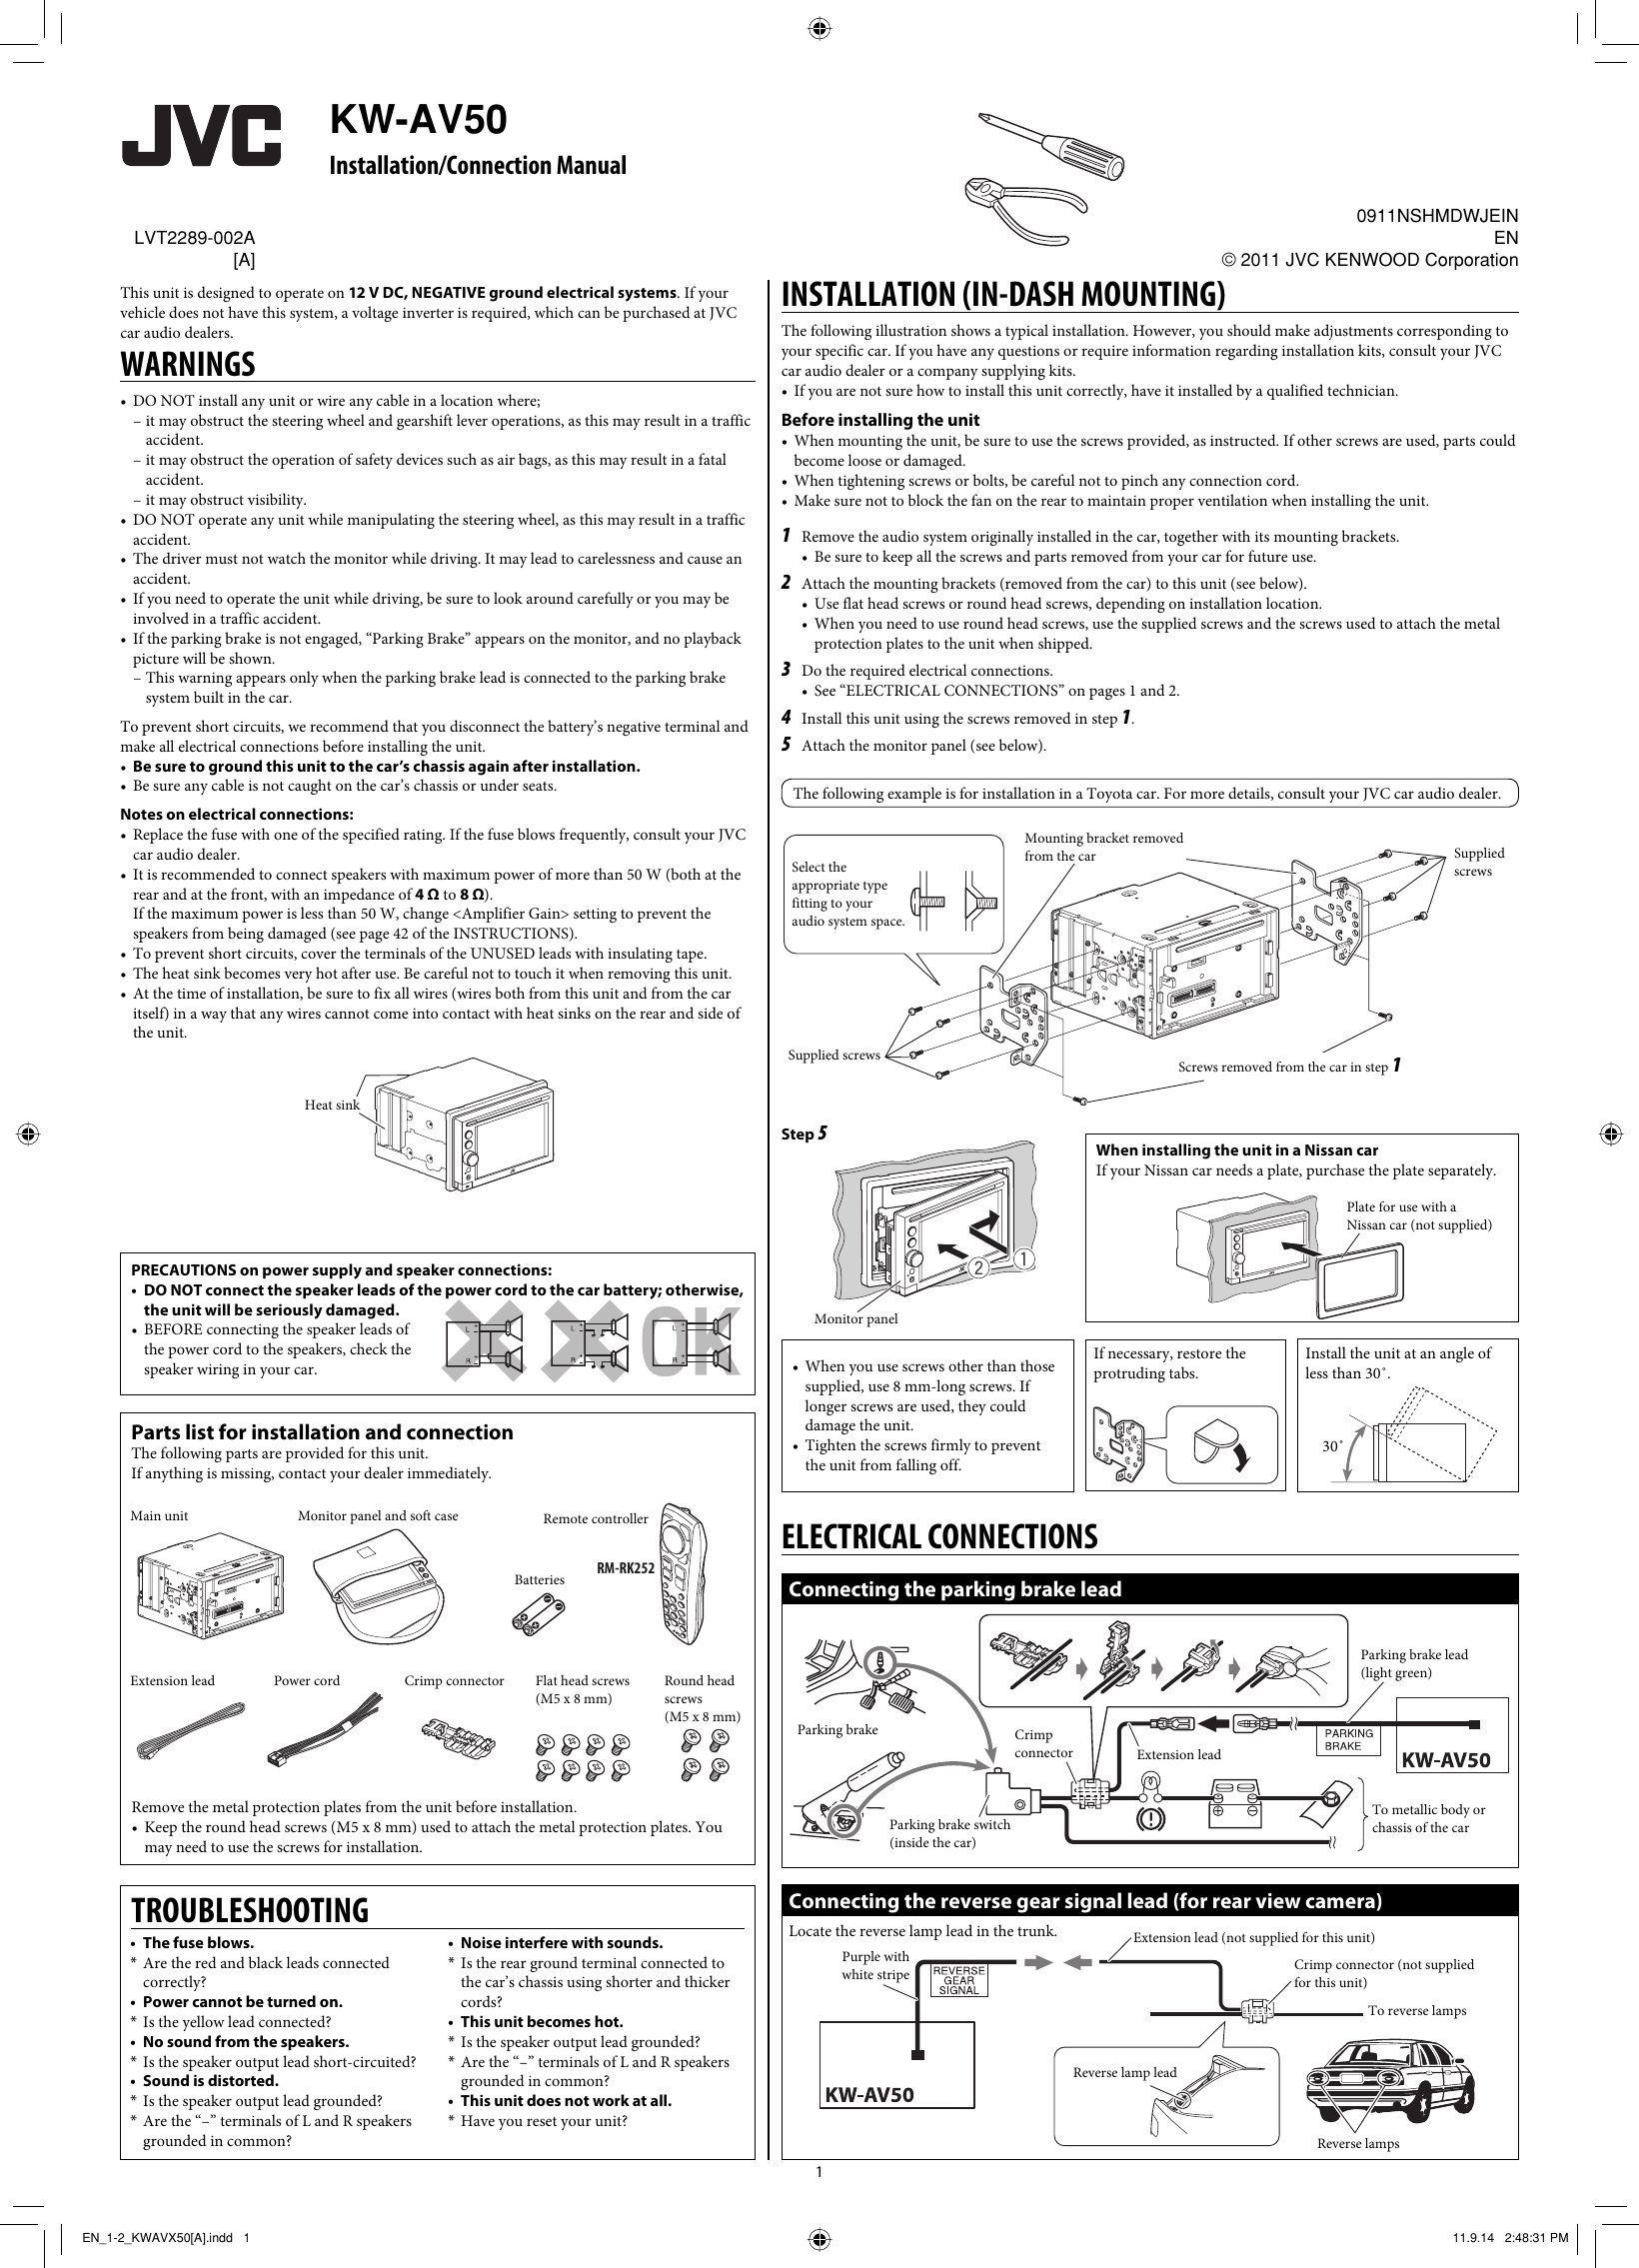 Jvc Kw Av50a Av50 A Installation Manual User Lvt2289 002a